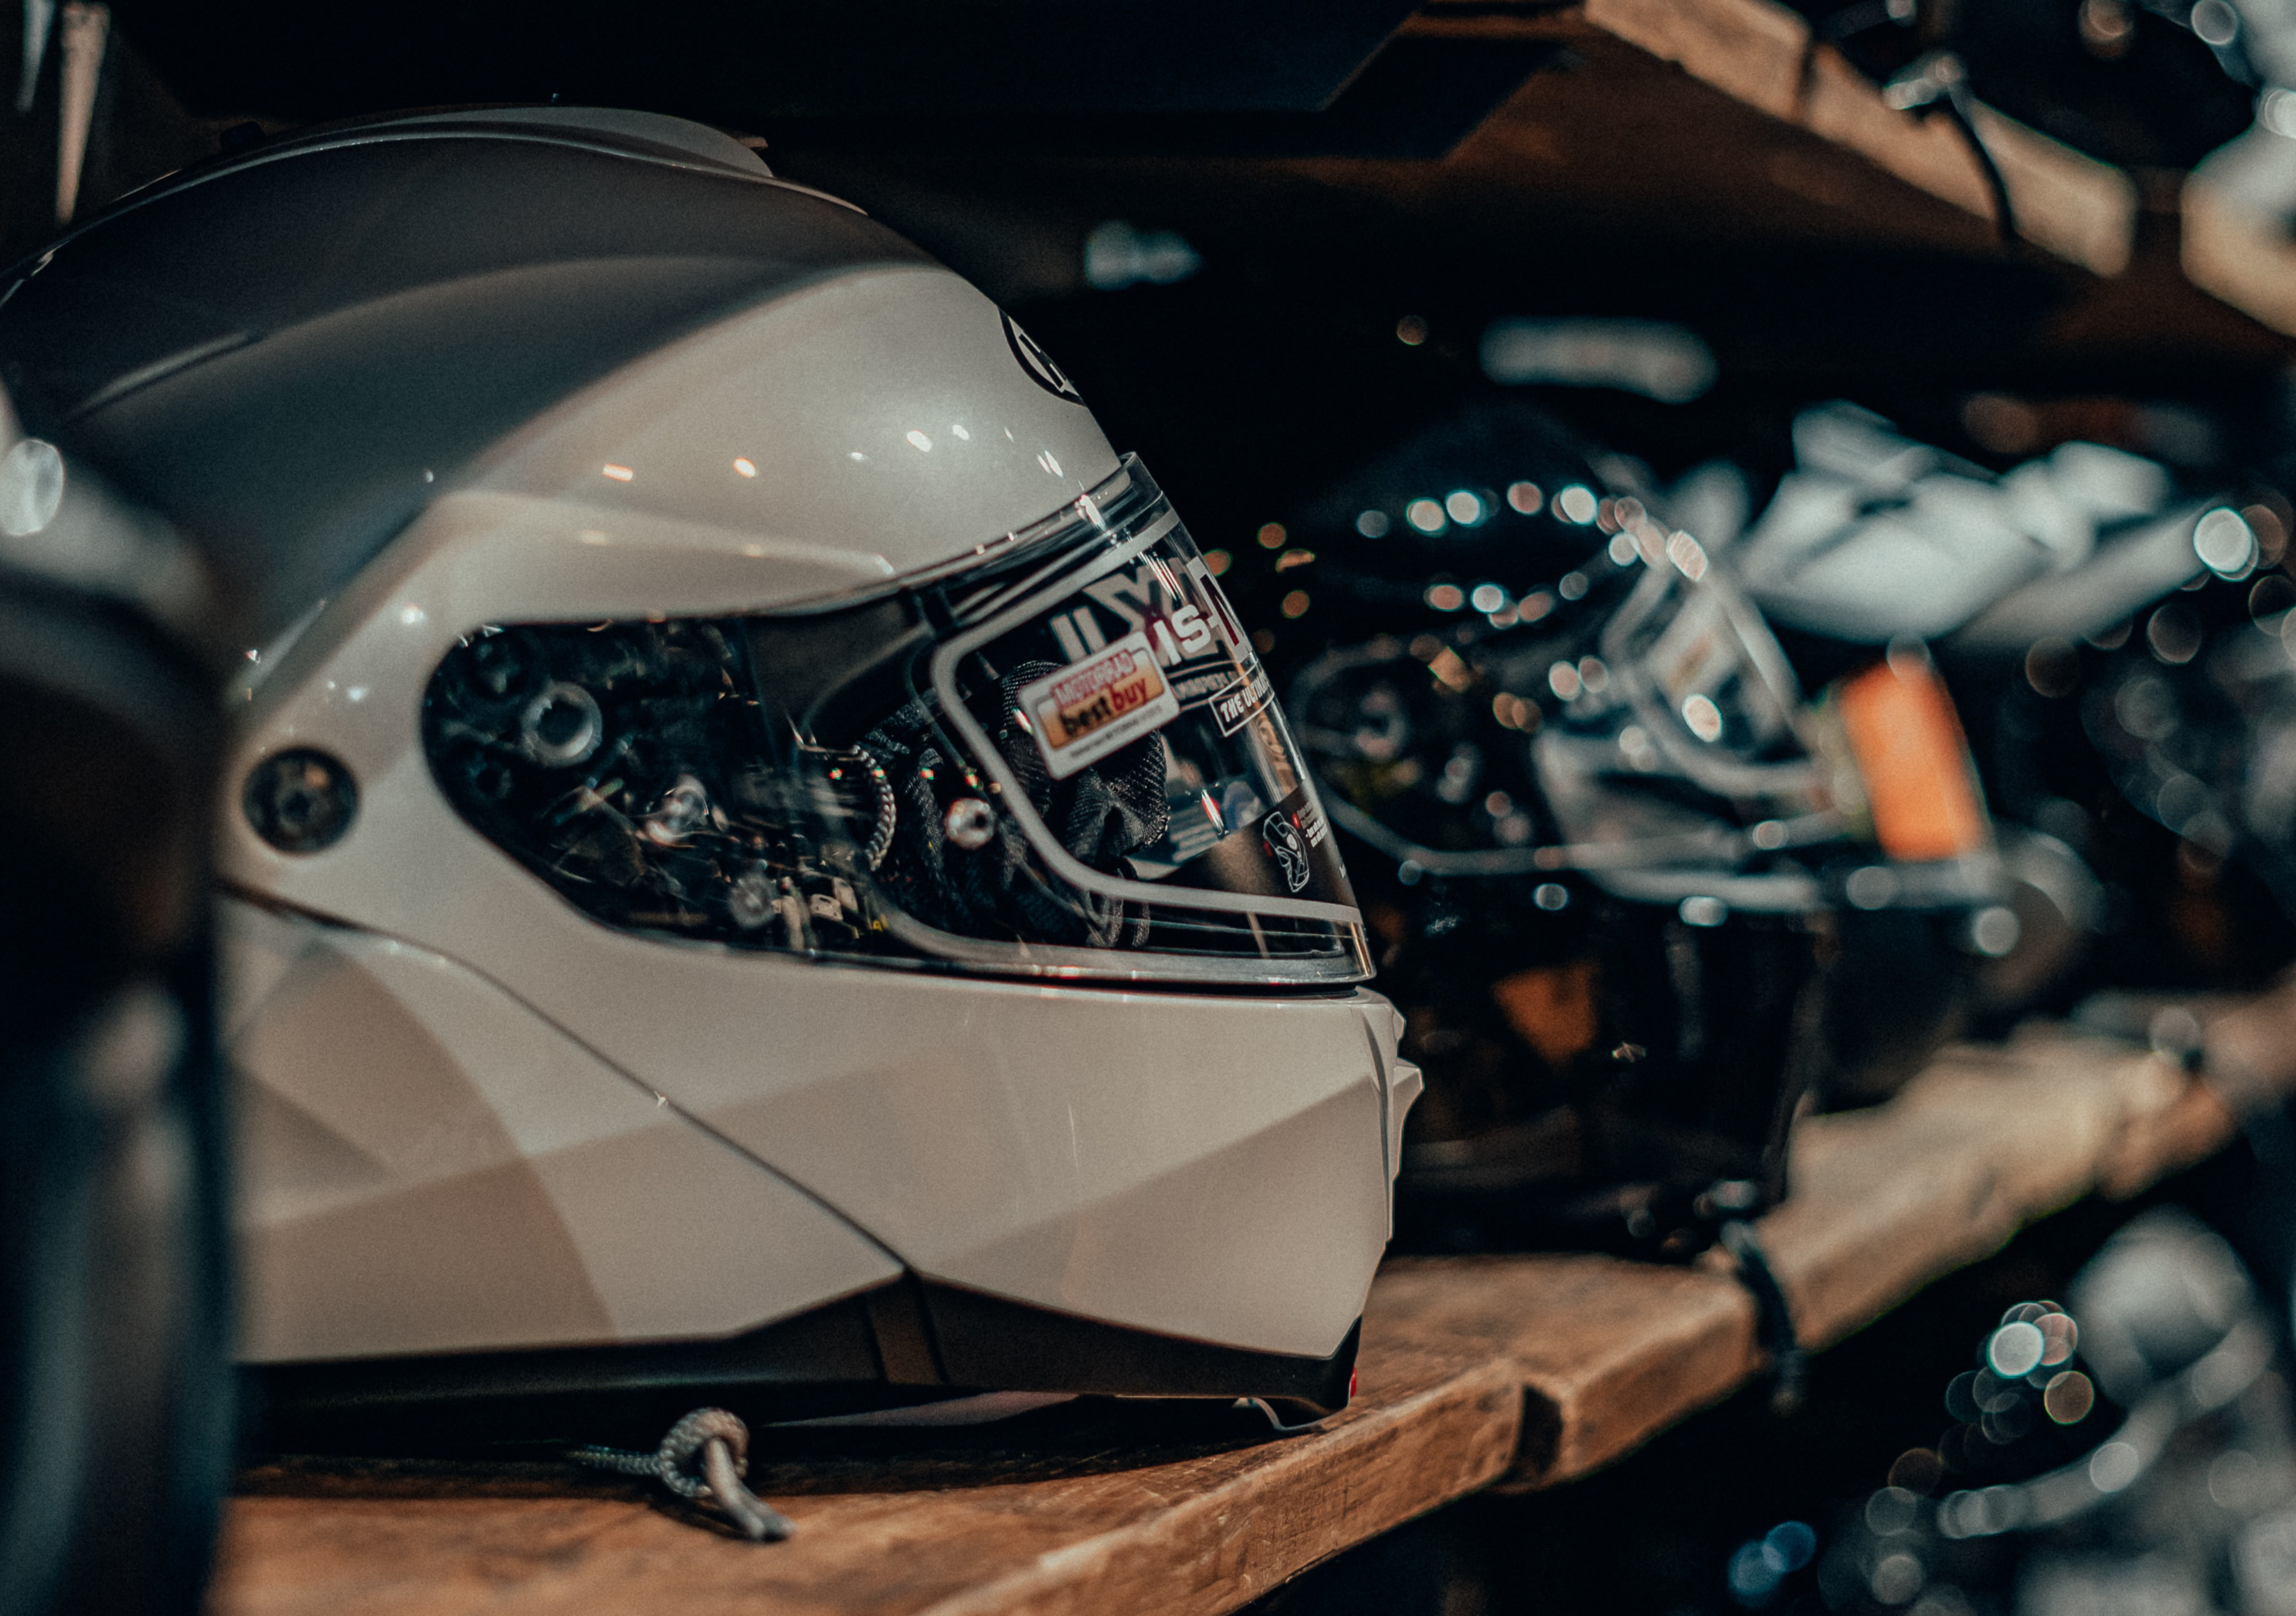 Curso de colisión haga turismo Mareo 10 cascos de moto homologados por la DGT que son realmente baratos -- Motos  -- Autobild.es